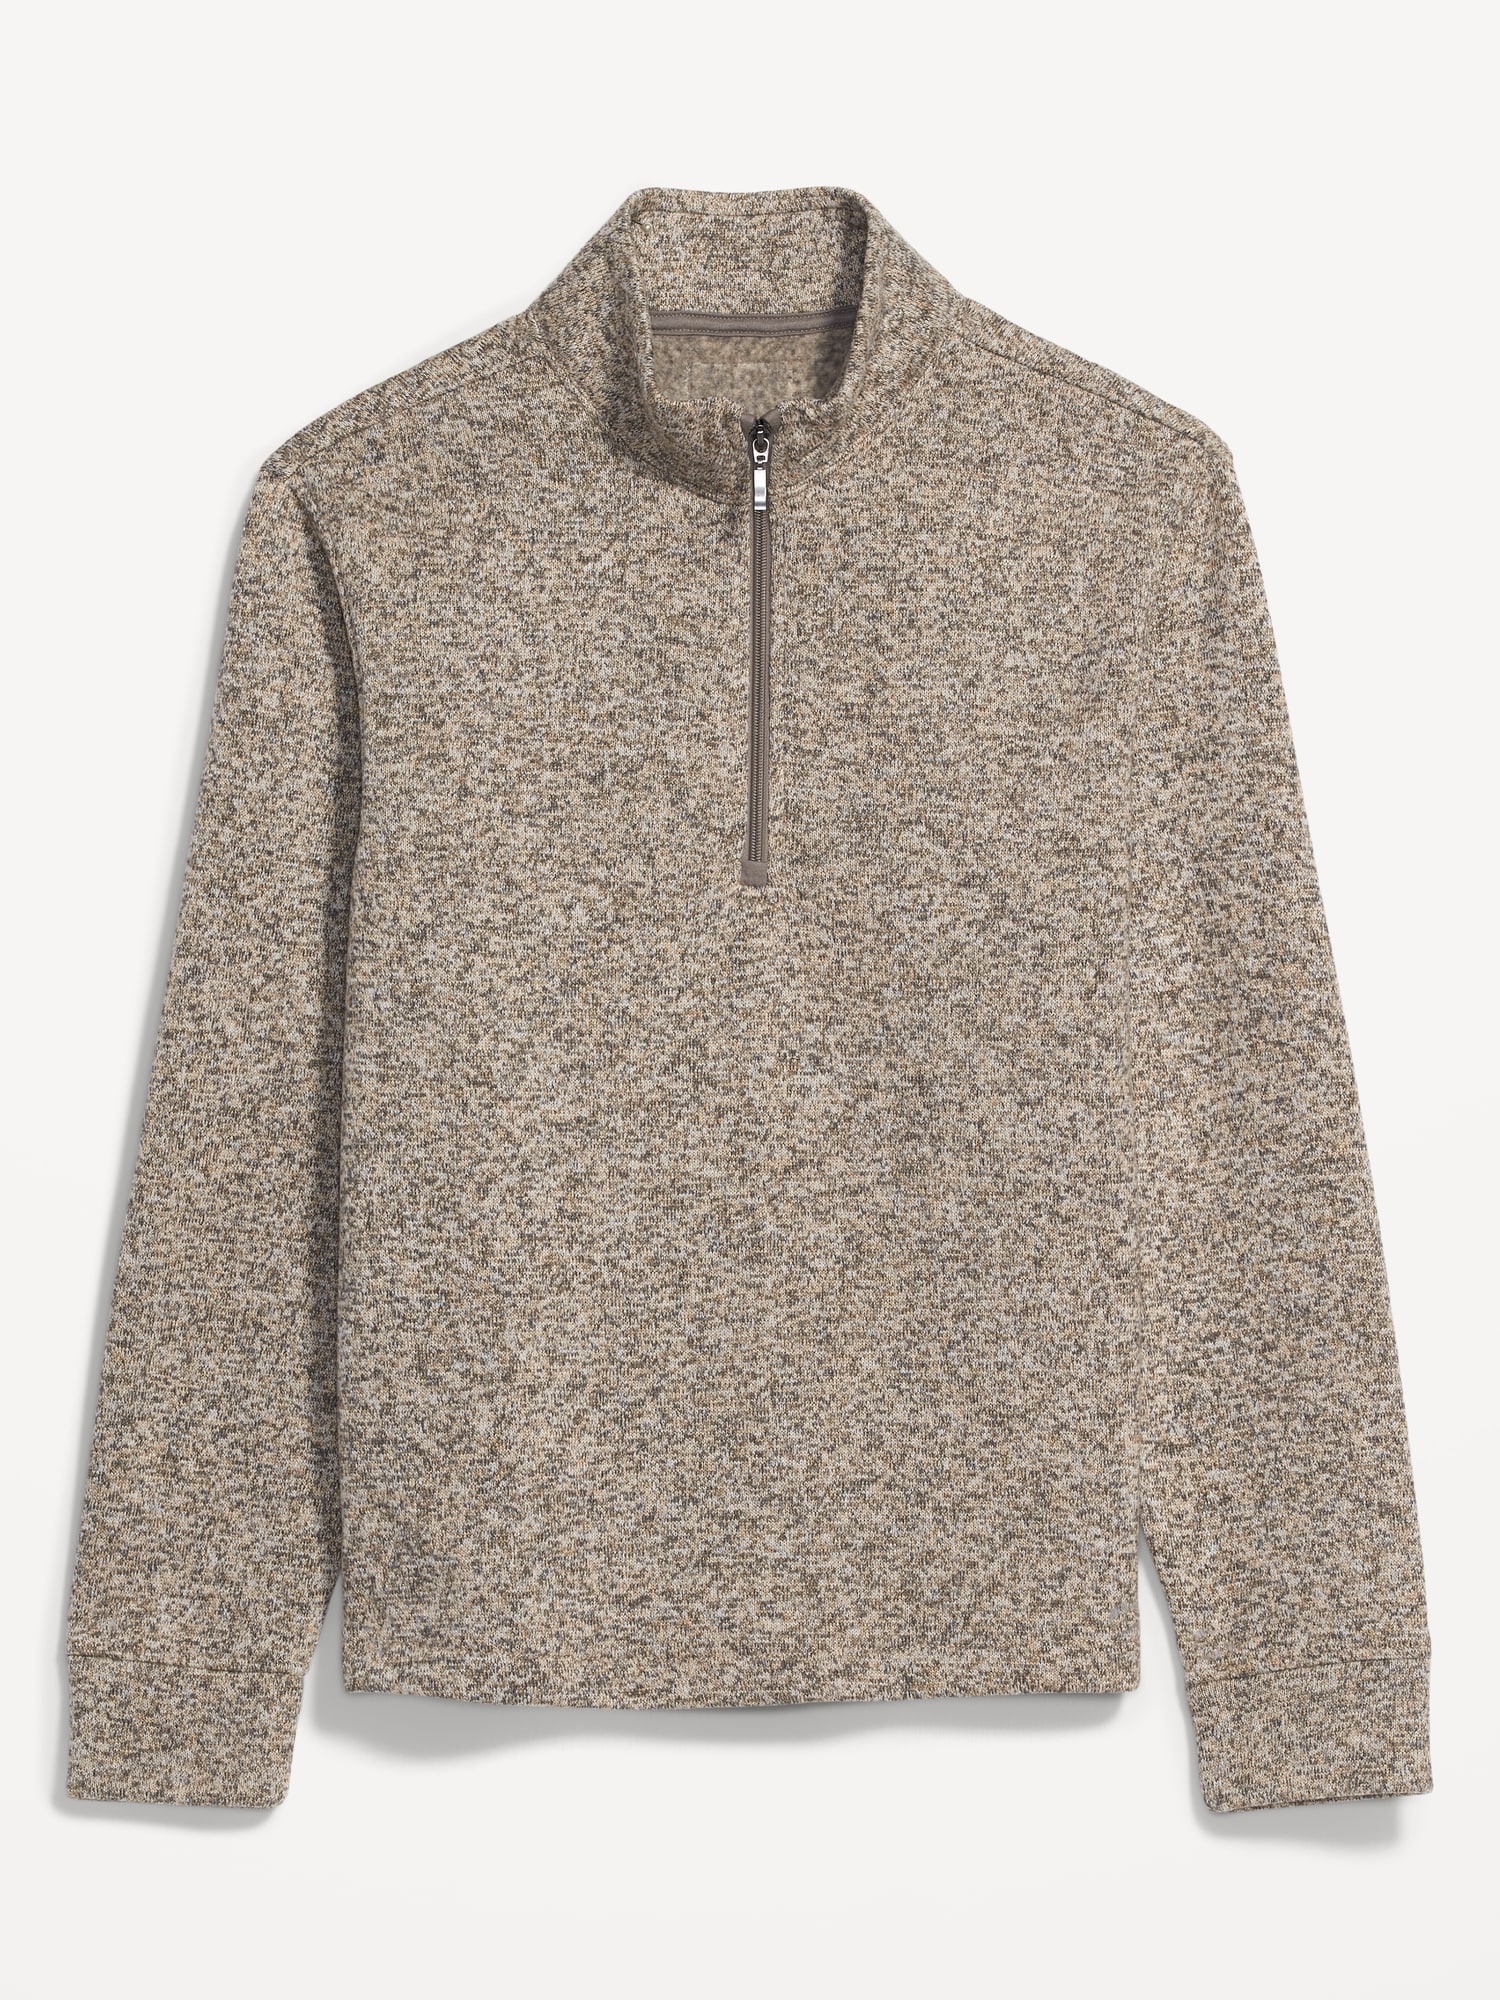 Sweater-Fleece Mock-Neck Quarter-Zip Sweatshirt for Men